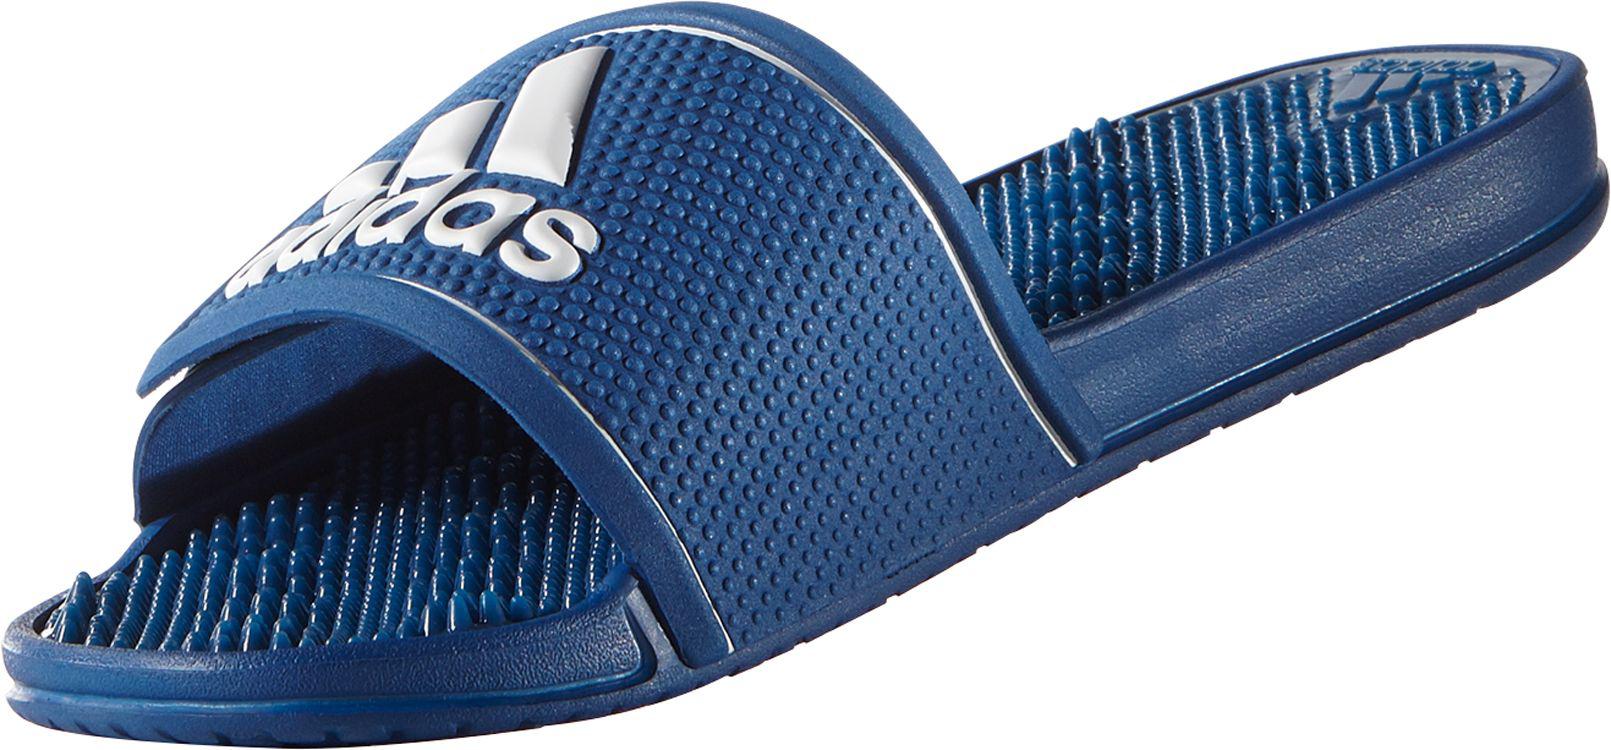 adidas adissage blue